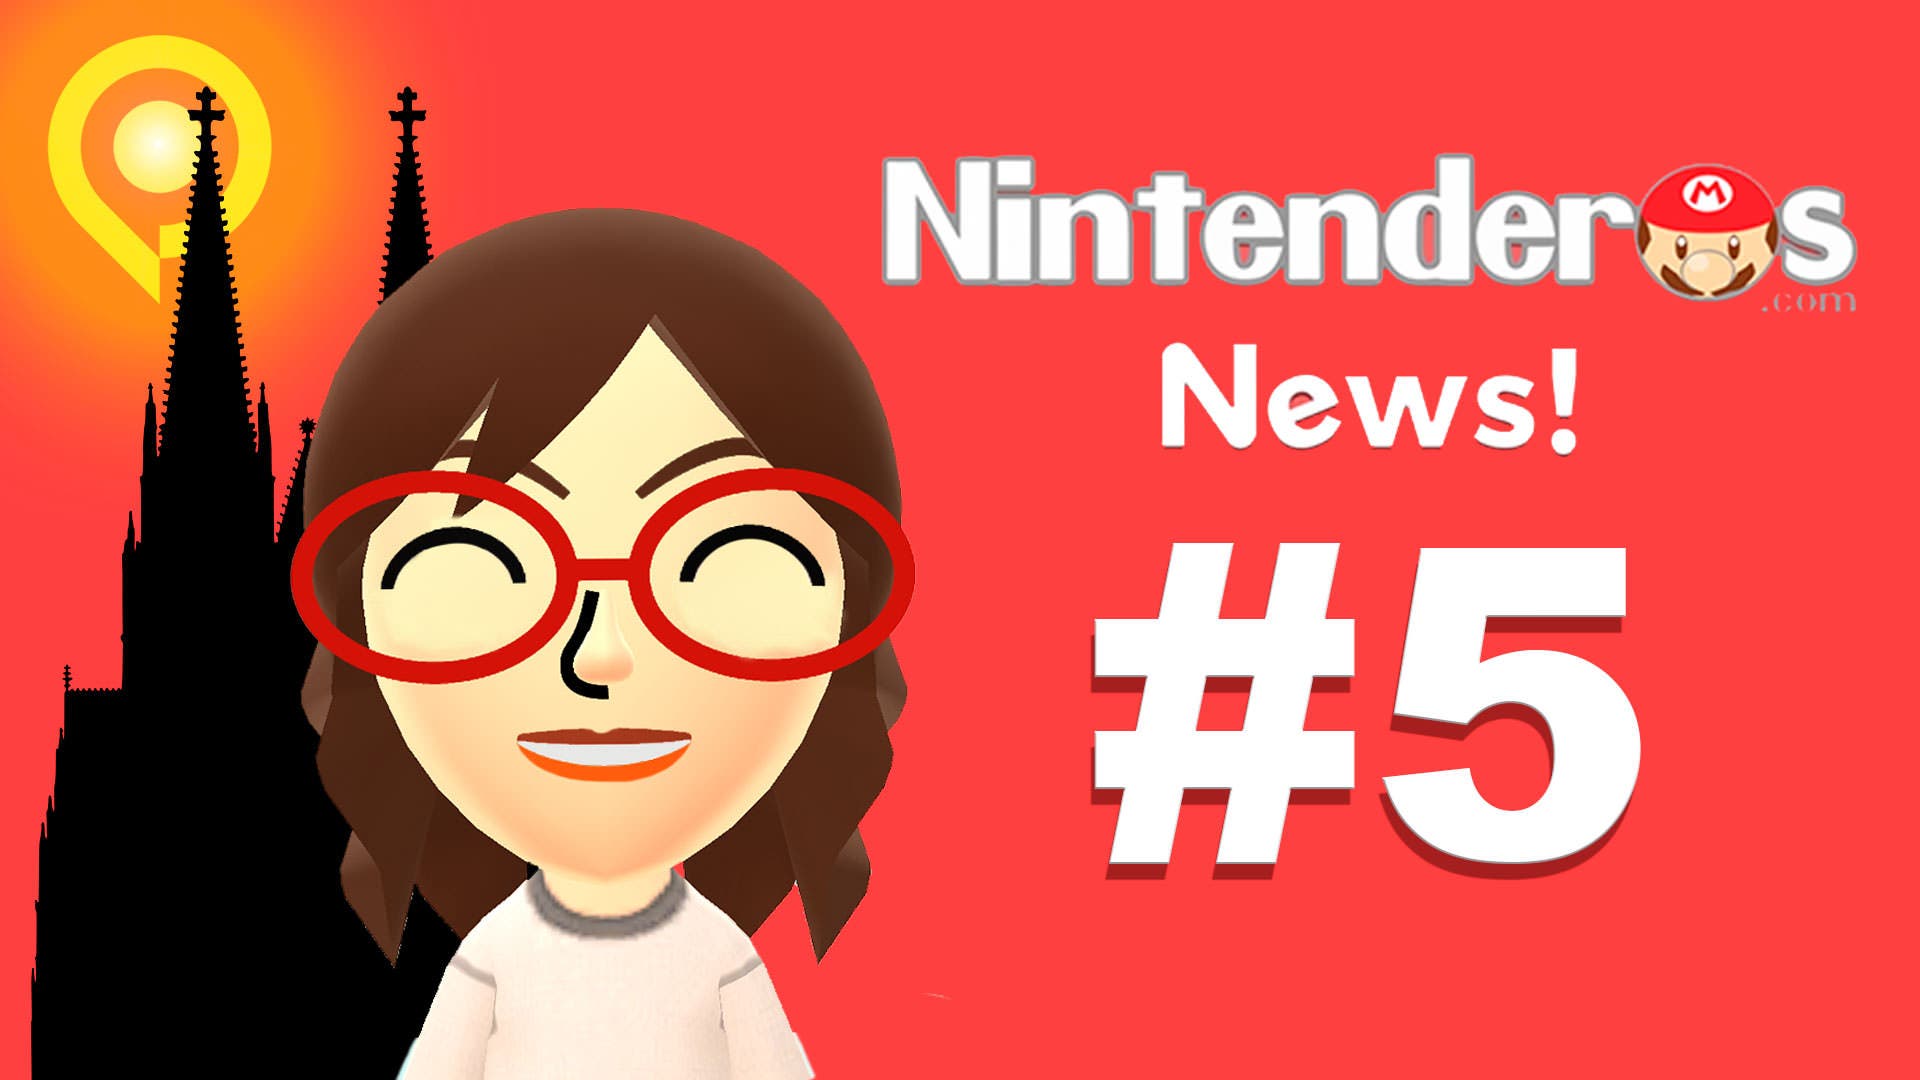 Nintenderos News! #5 ¡Ya está aquí la Gamescom! Modo misiones en Mario Kart Wii y más